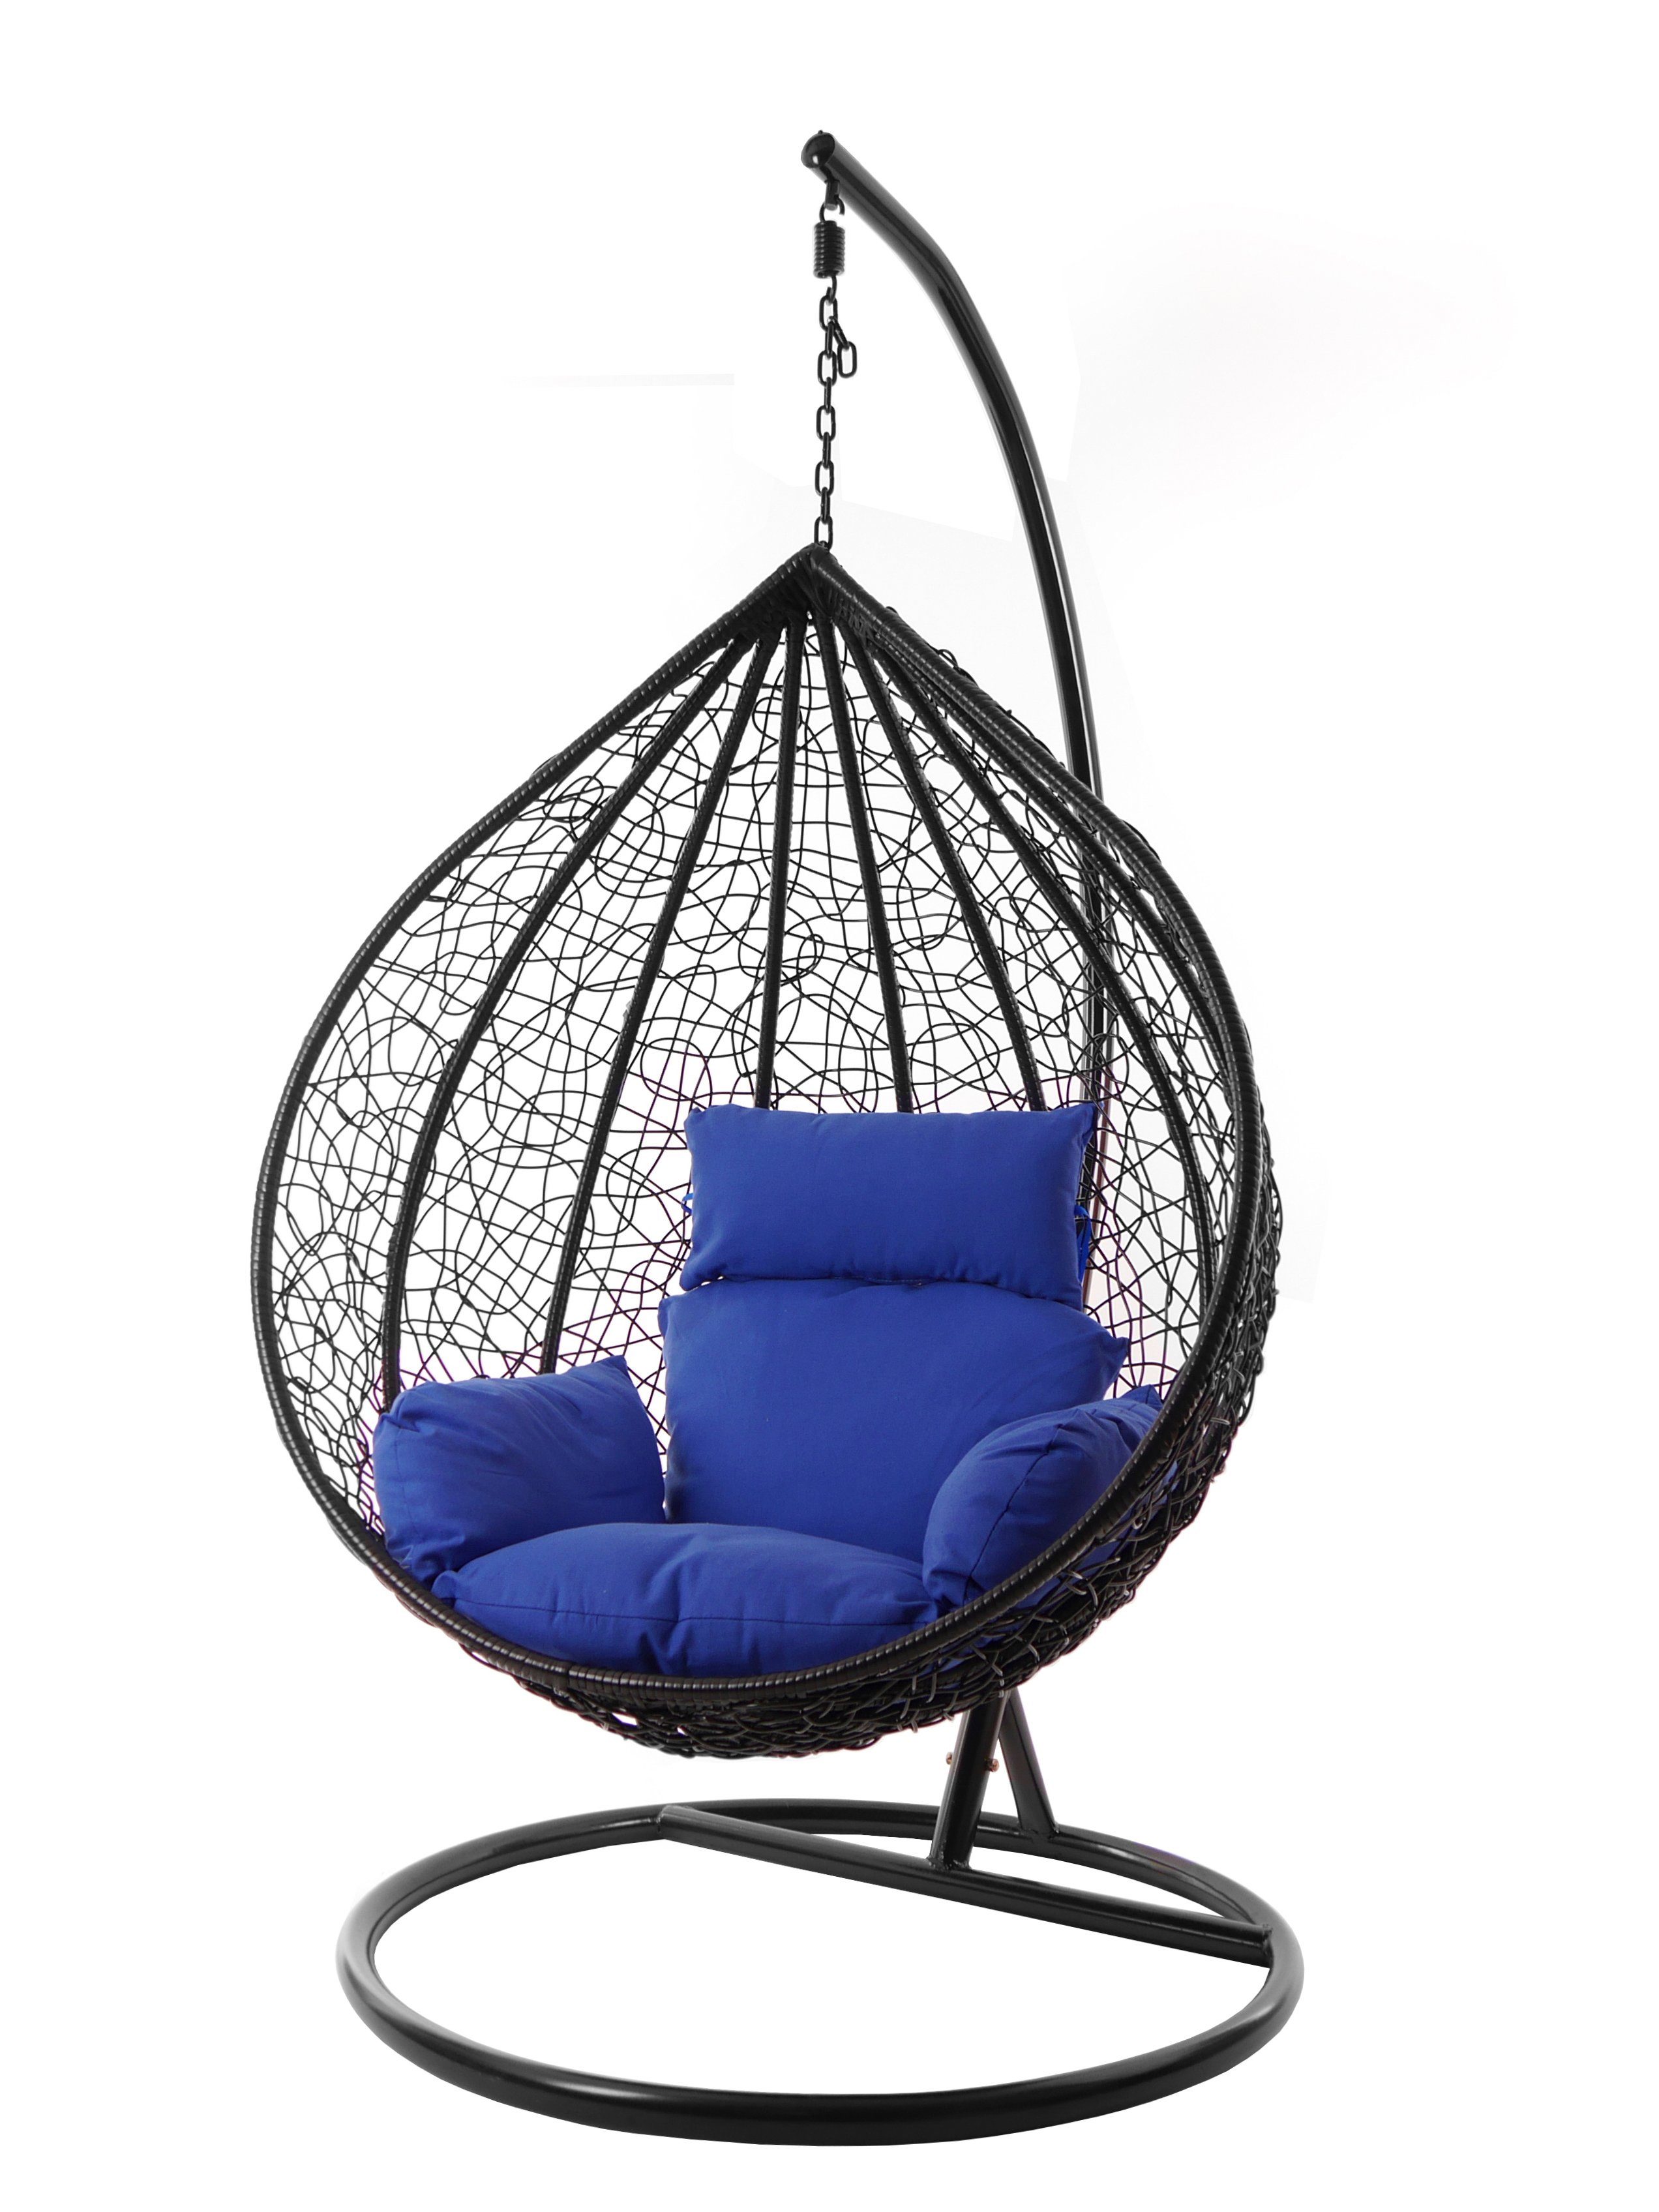 KIDEO Hängesessel Hängesessel MANACOR schwarz, XXL Swing Chair, edel, Gestell und Kissen inklusive, Nest-Kissen, verschiedene Farben blau (5900 admiral)